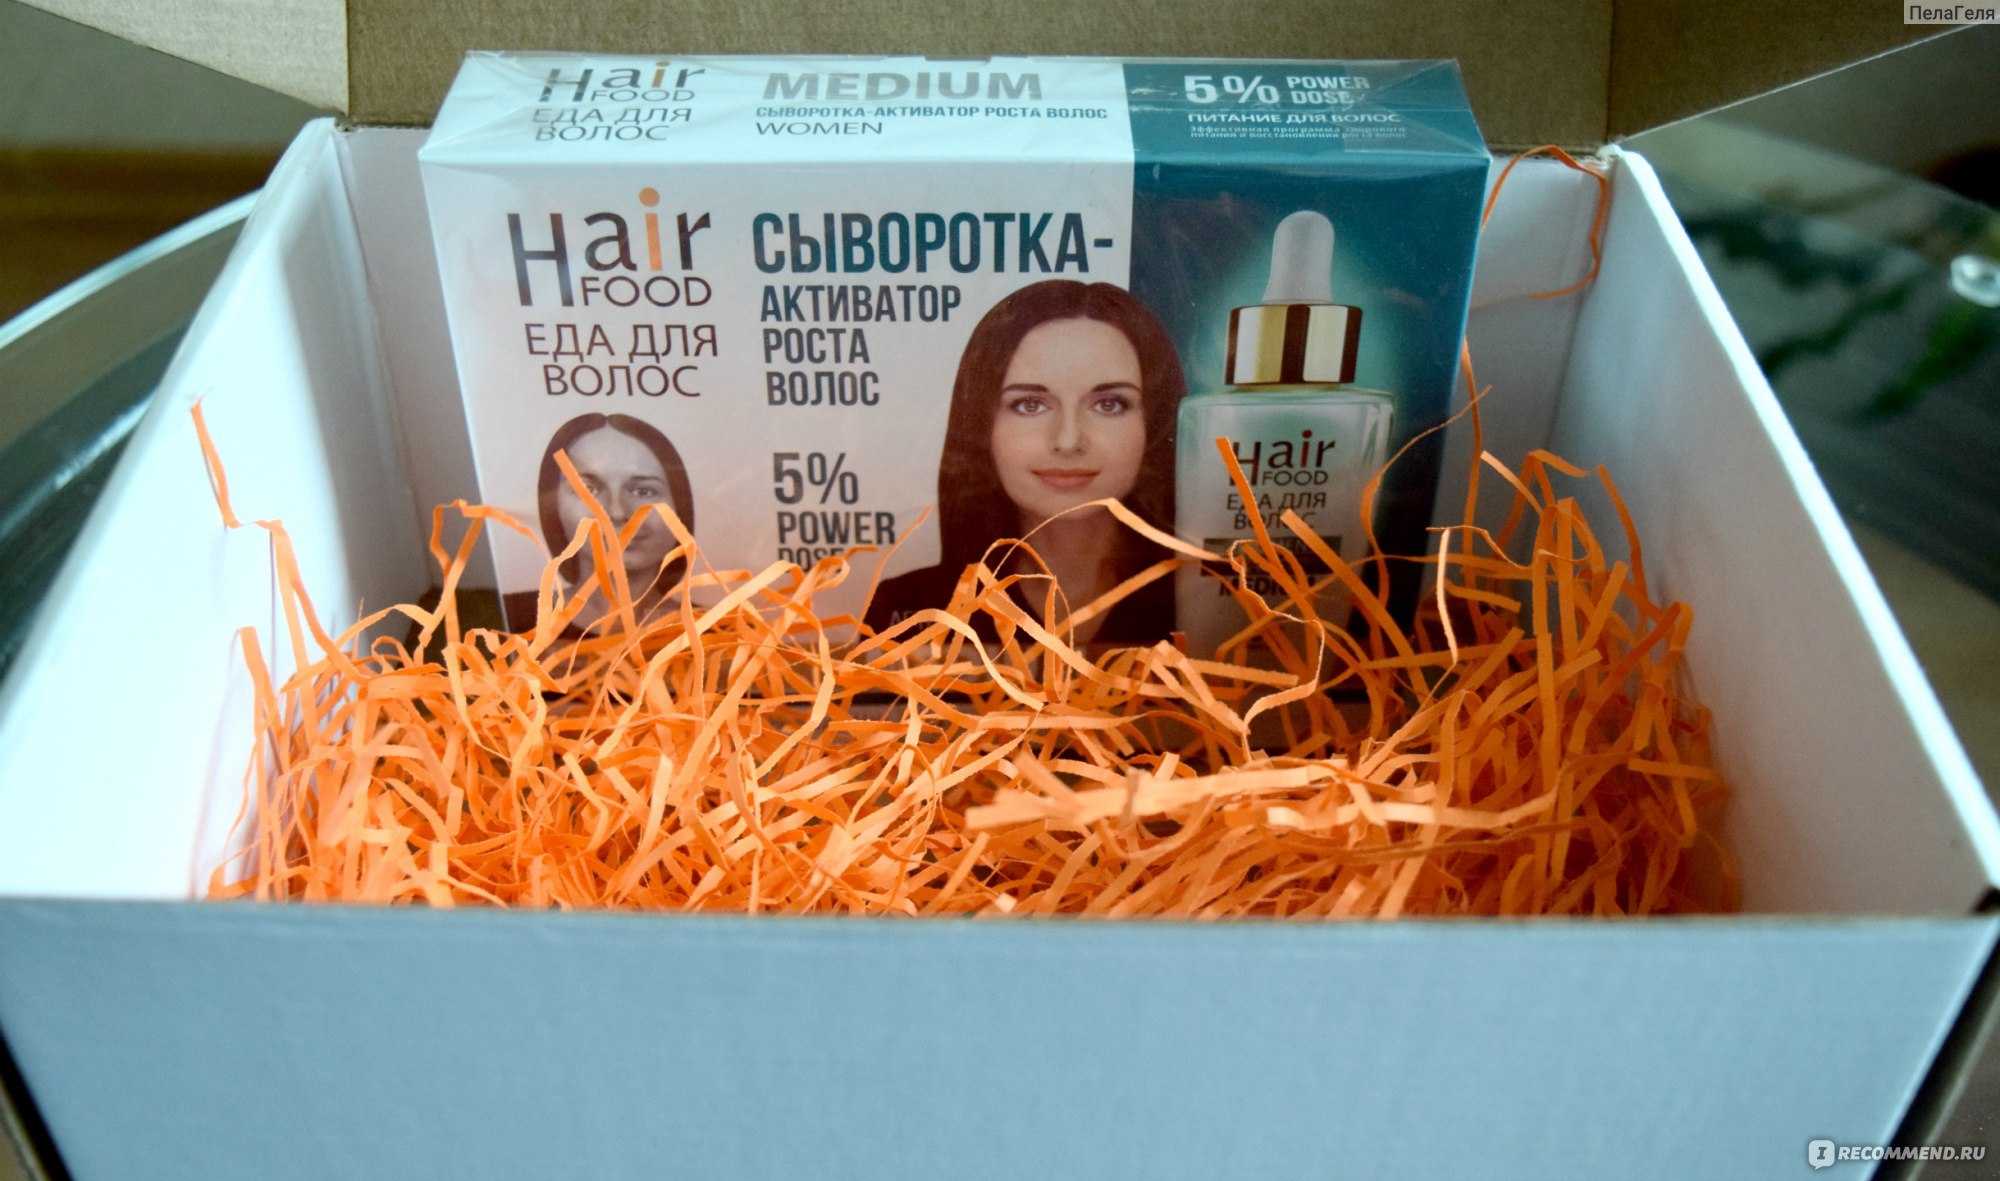 Обзор инновационной сыворотки-активатора роста волос hairfood которая была разработана совместно с врачами известной клиники лечения волос real trans hair (rth).